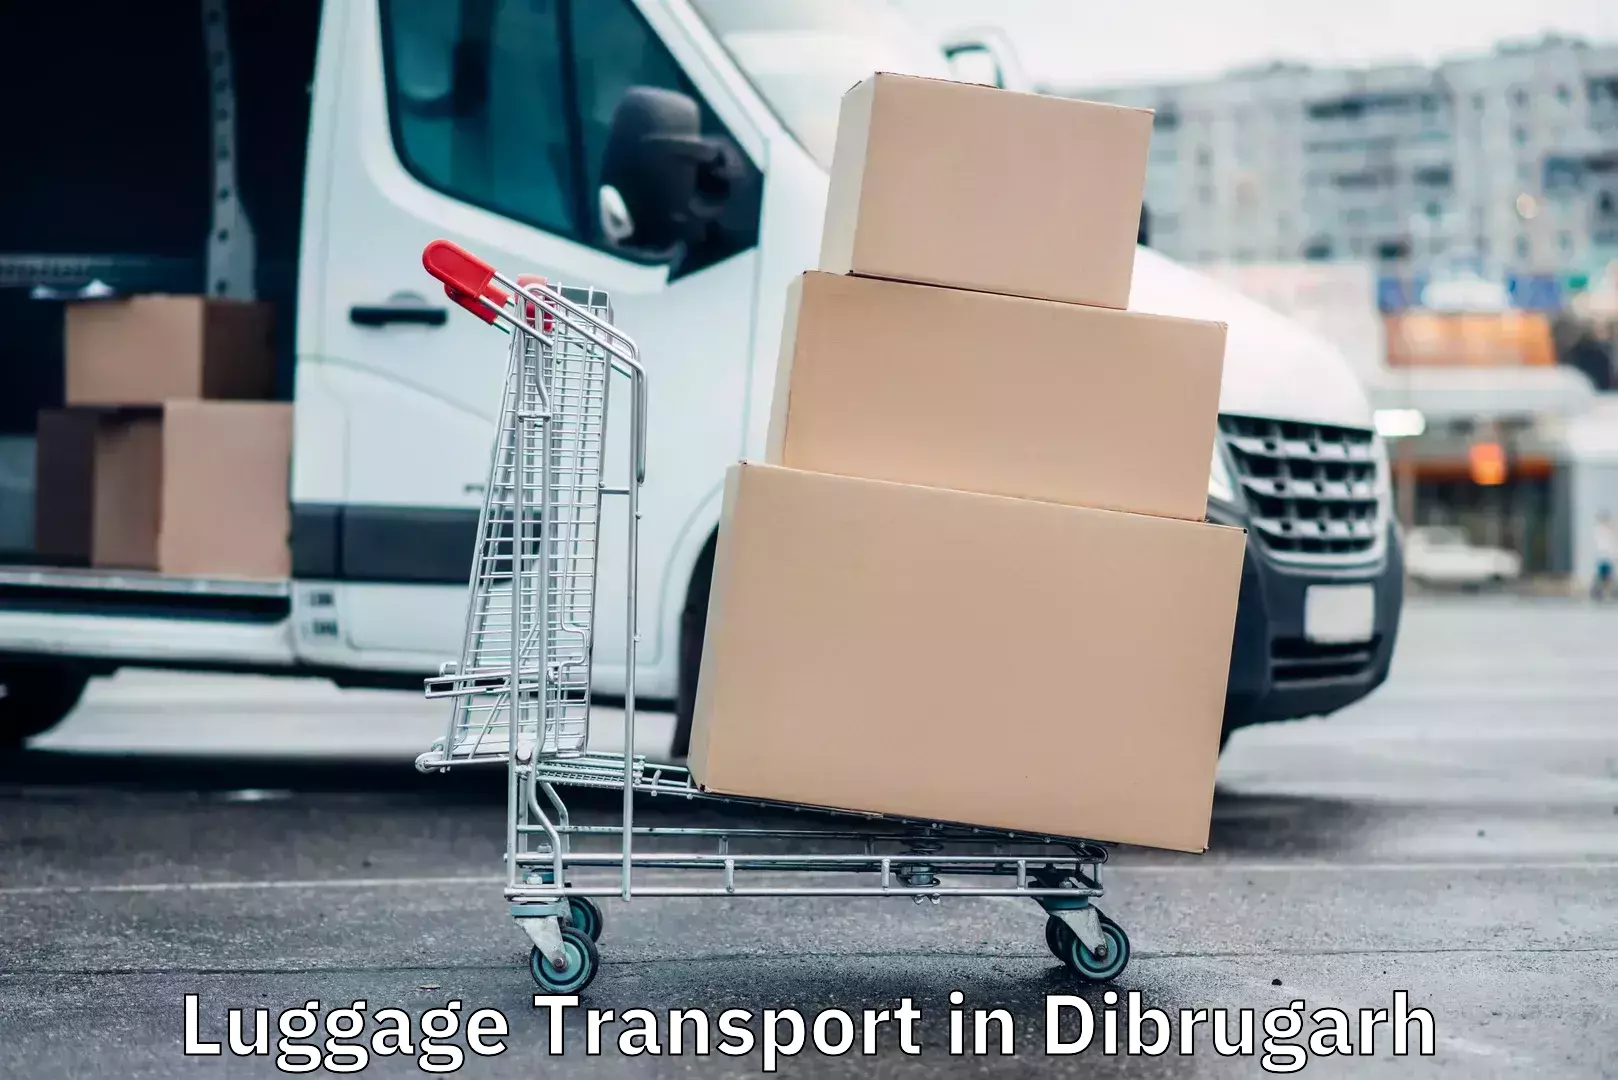 Luggage transfer service in Dibrugarh